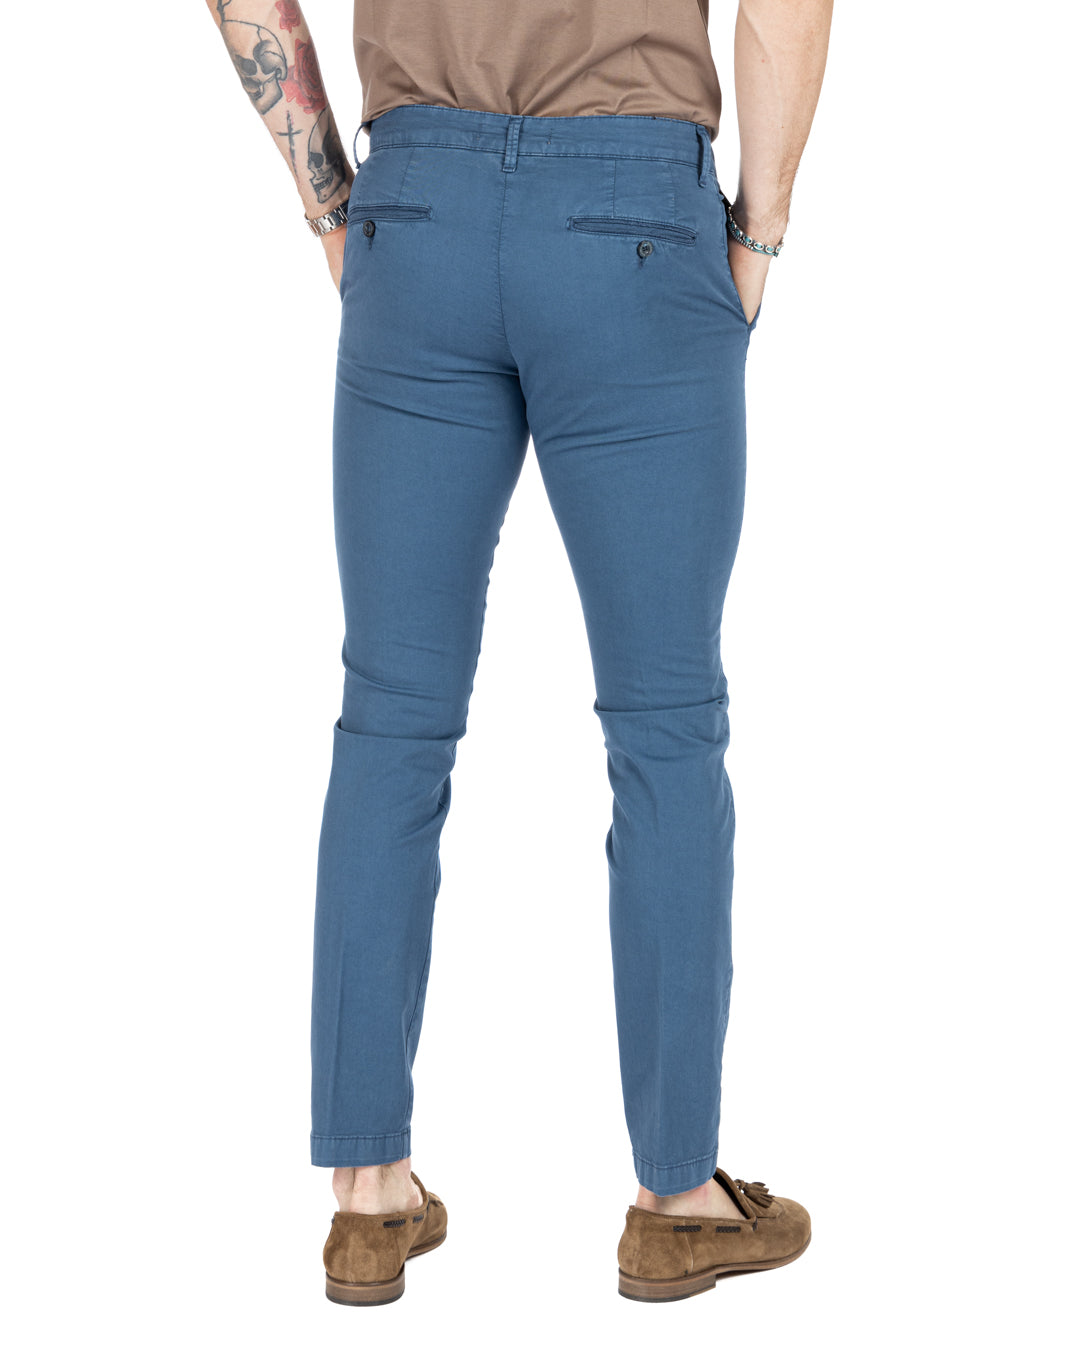 Frank - Basic indigo trousers 